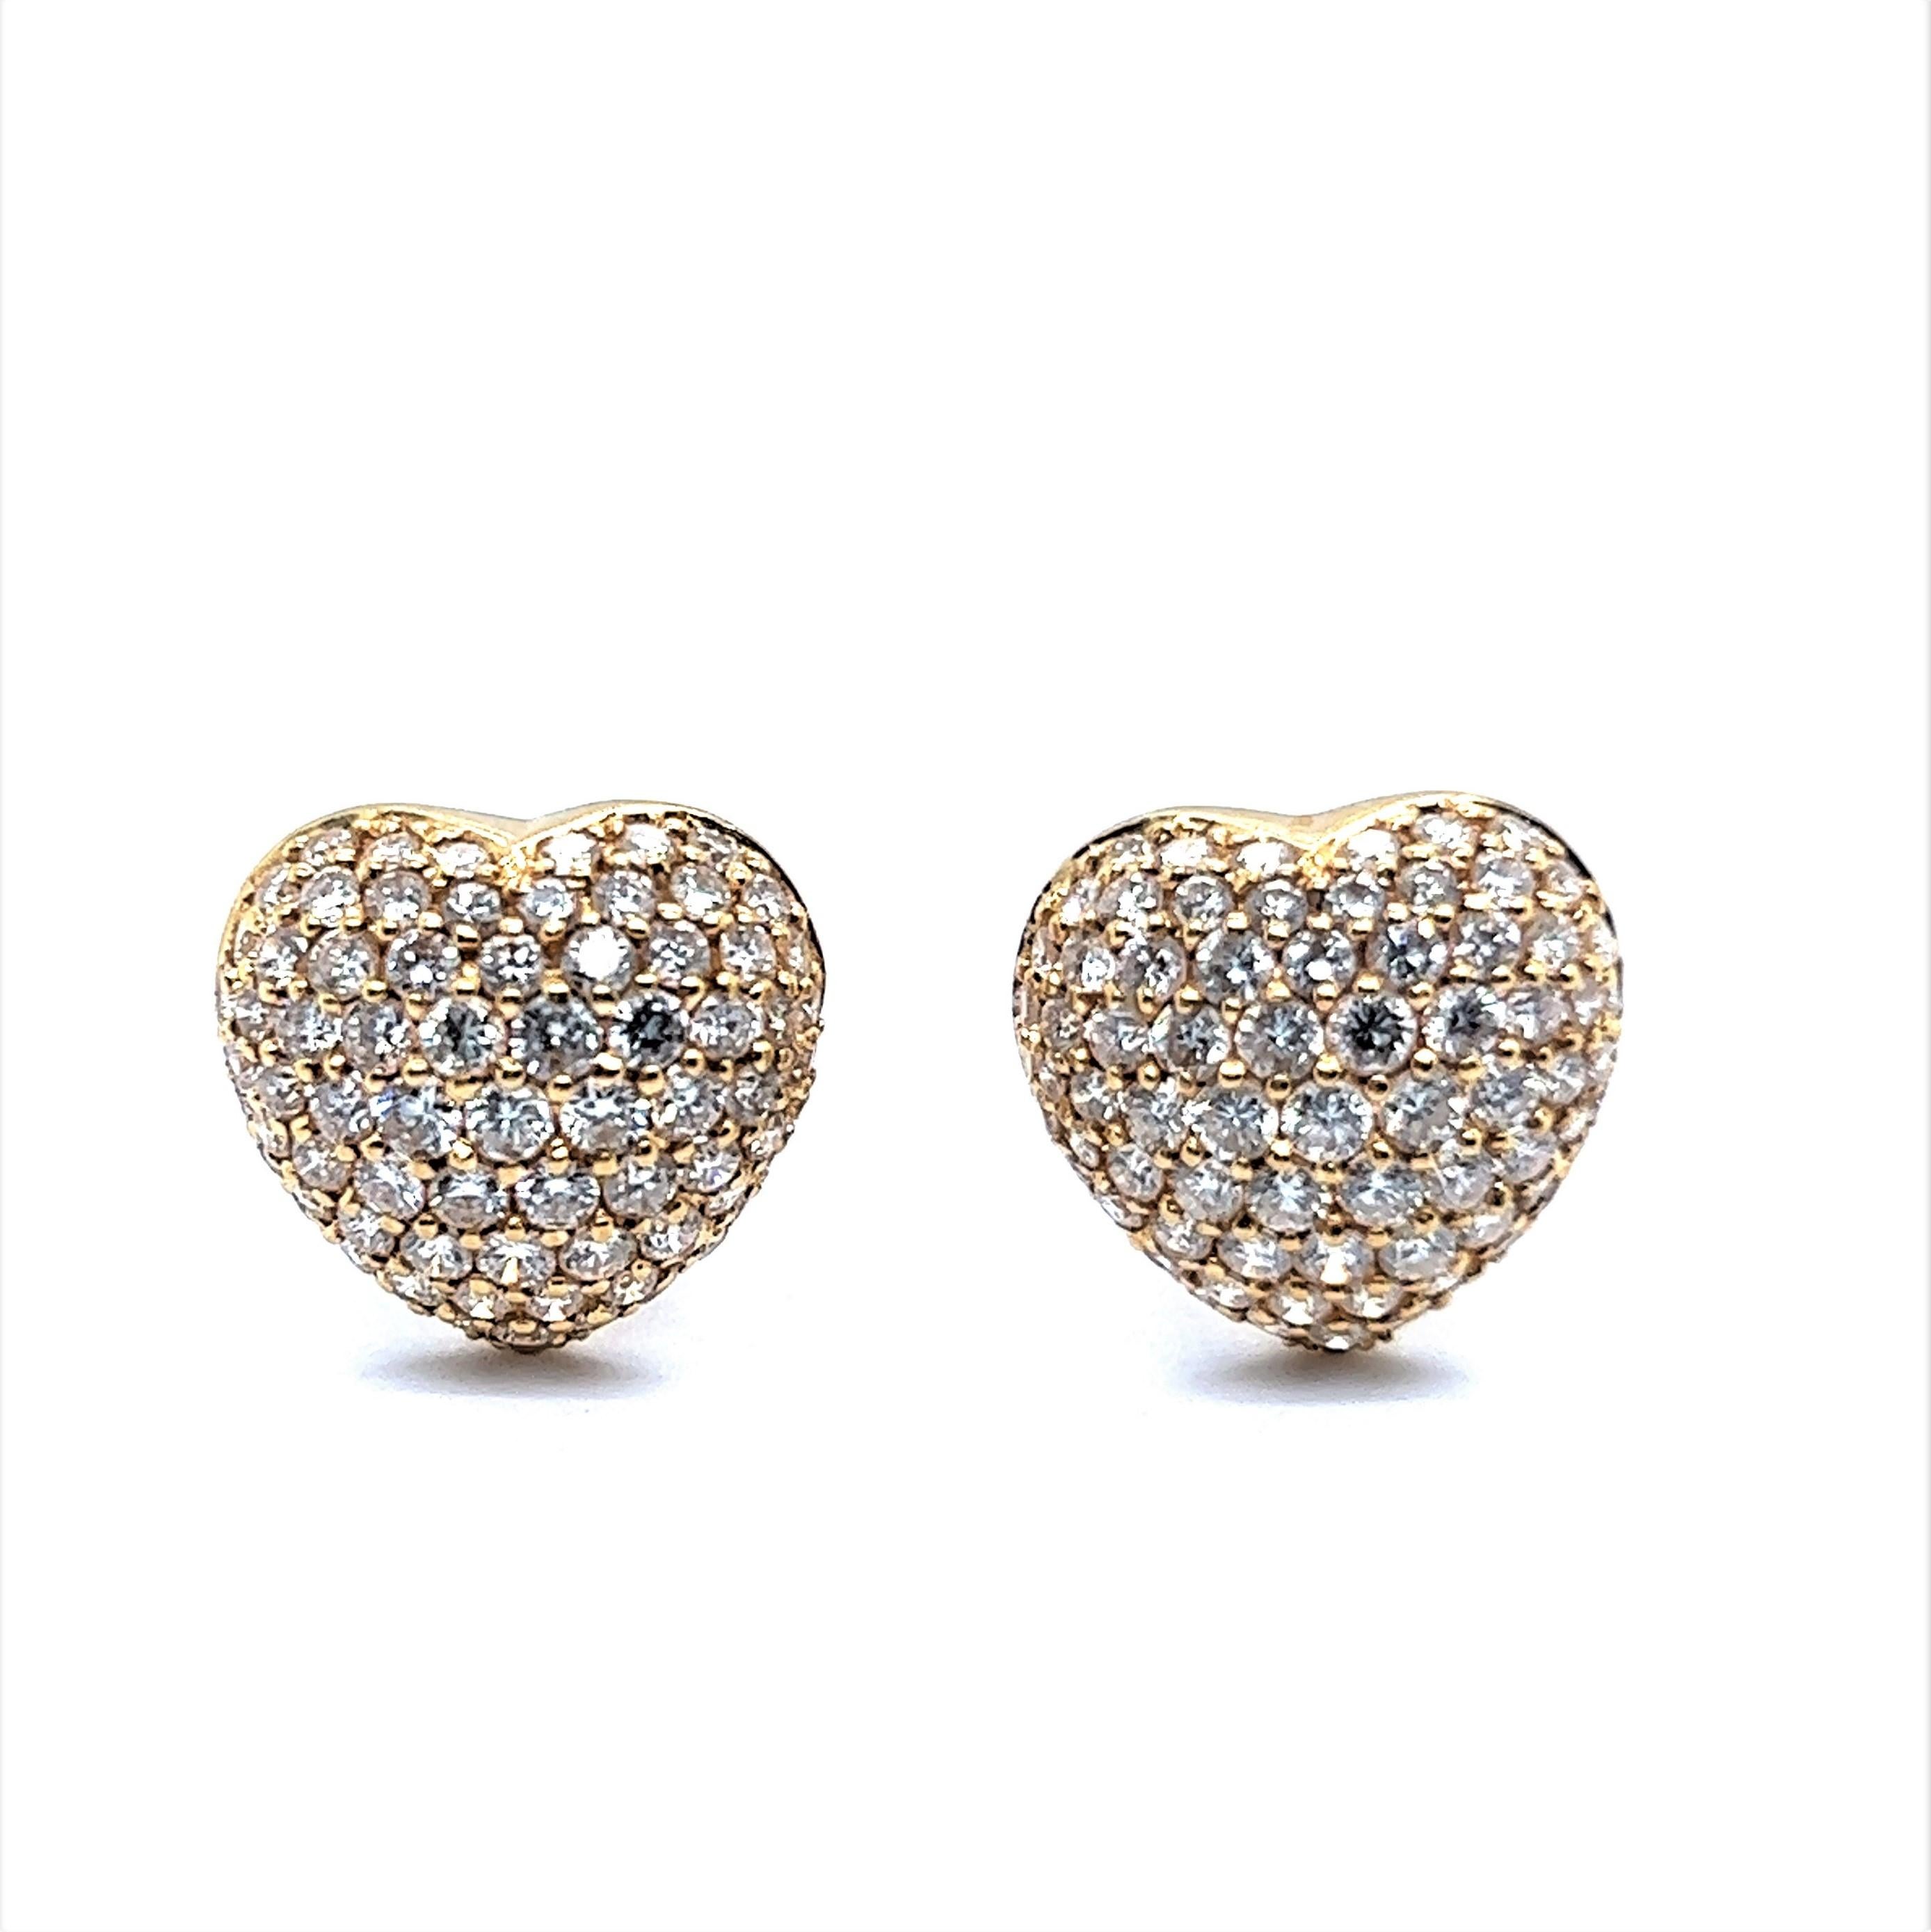 Modern Heart Shaped Diamond Pavé Earrings in 18 Karat Yellow Gold For Sale